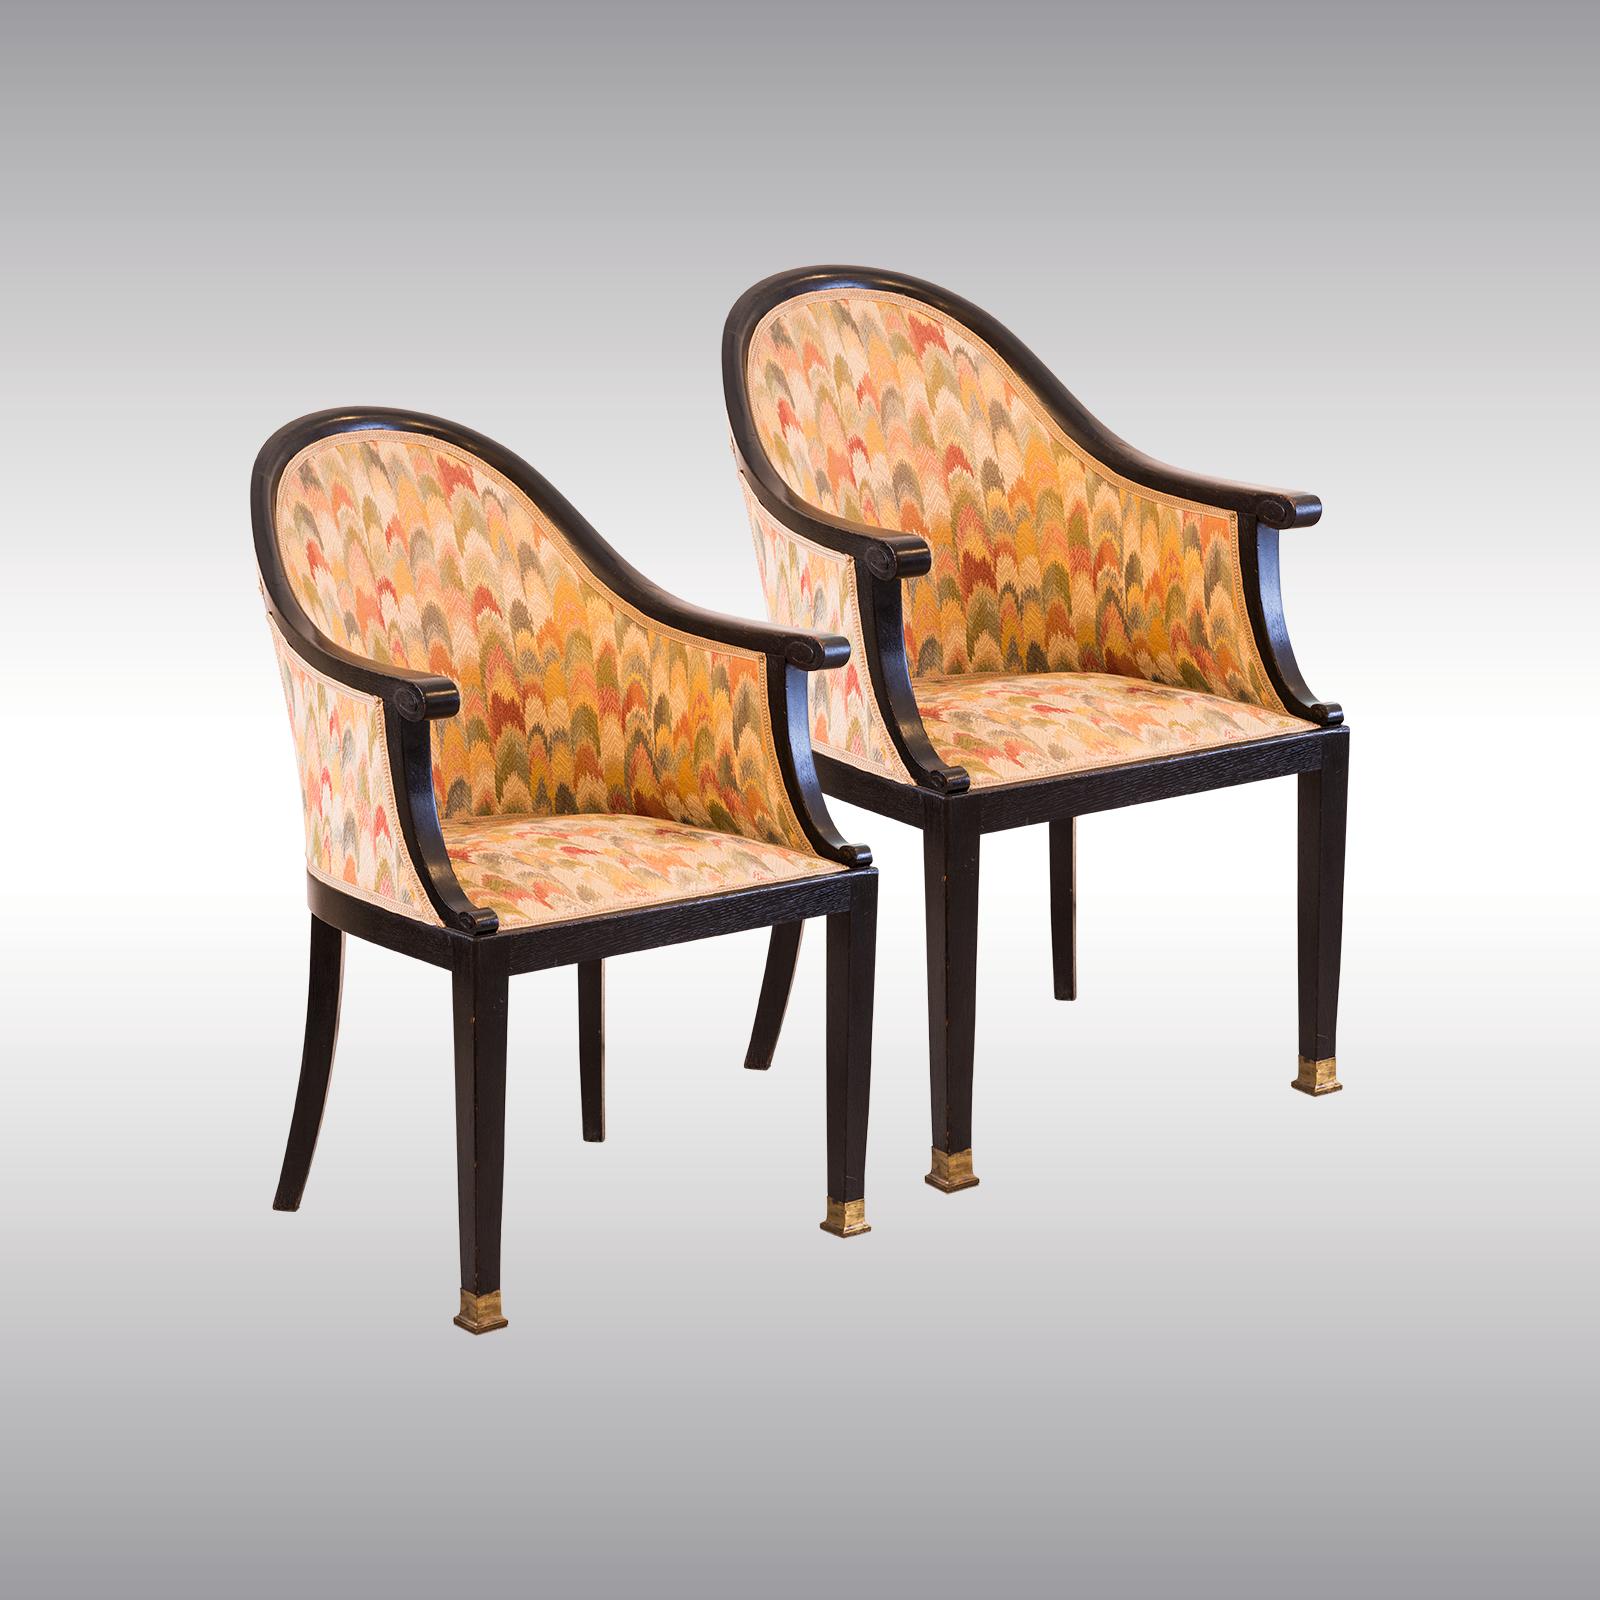 Sehr elegante und bequeme Stühle, die Josef Hoffmann oder Otto Prutscher zugeschrieben werden. Wurde vor einiger Zeit renoviert, der Stoff ist teilweise fleckig. Kann separat verkauft werden.

